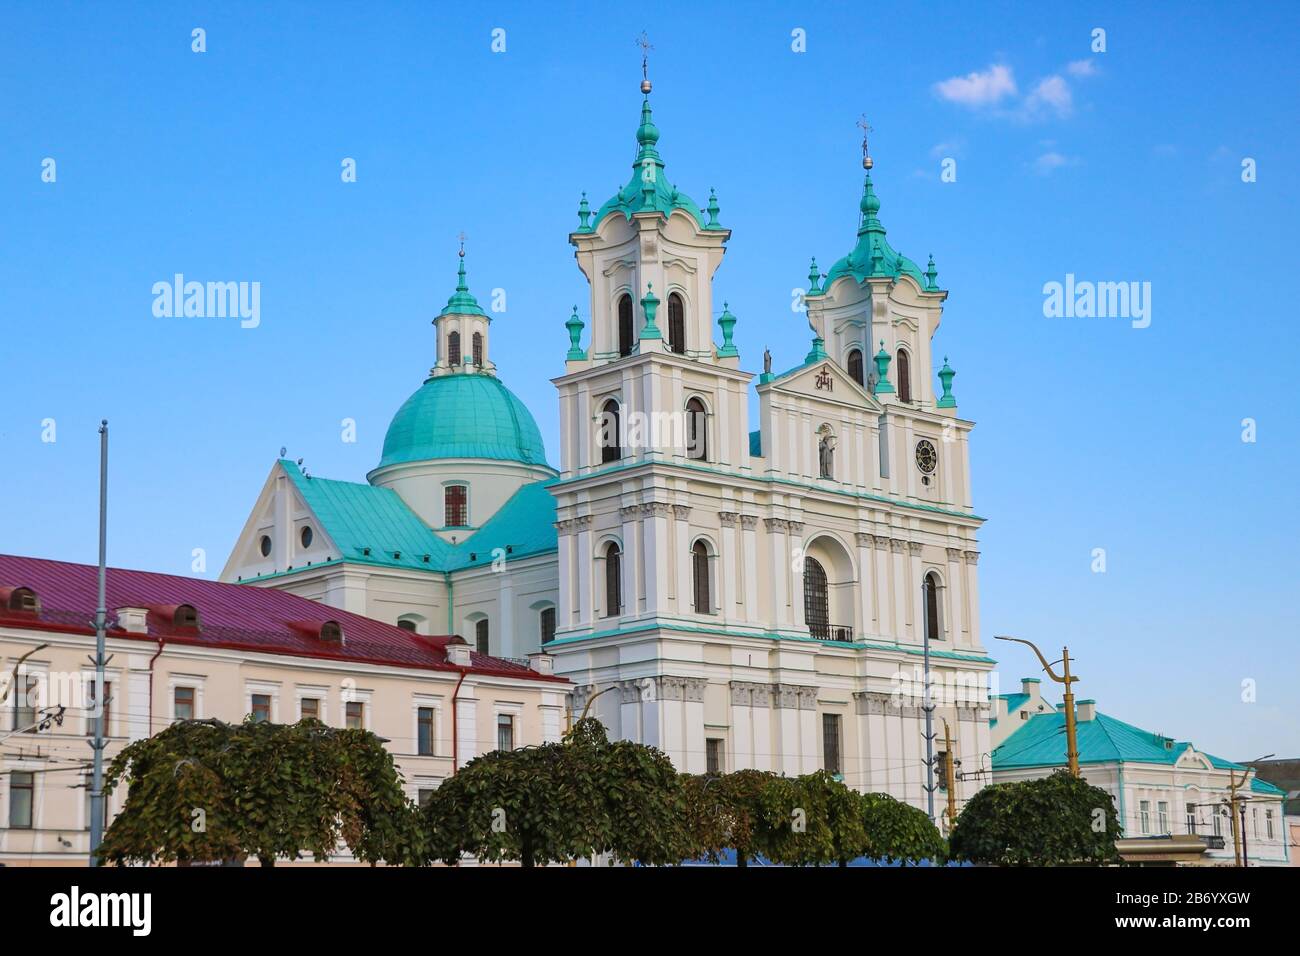 Grodno, Bielorussia - 15 maggio 2019: Famoso punto di riferimento è la Cattedrale di San Francesco Saverio a Grodno. La destinazione migliore per le vacanze estive in Europa orientale Foto Stock